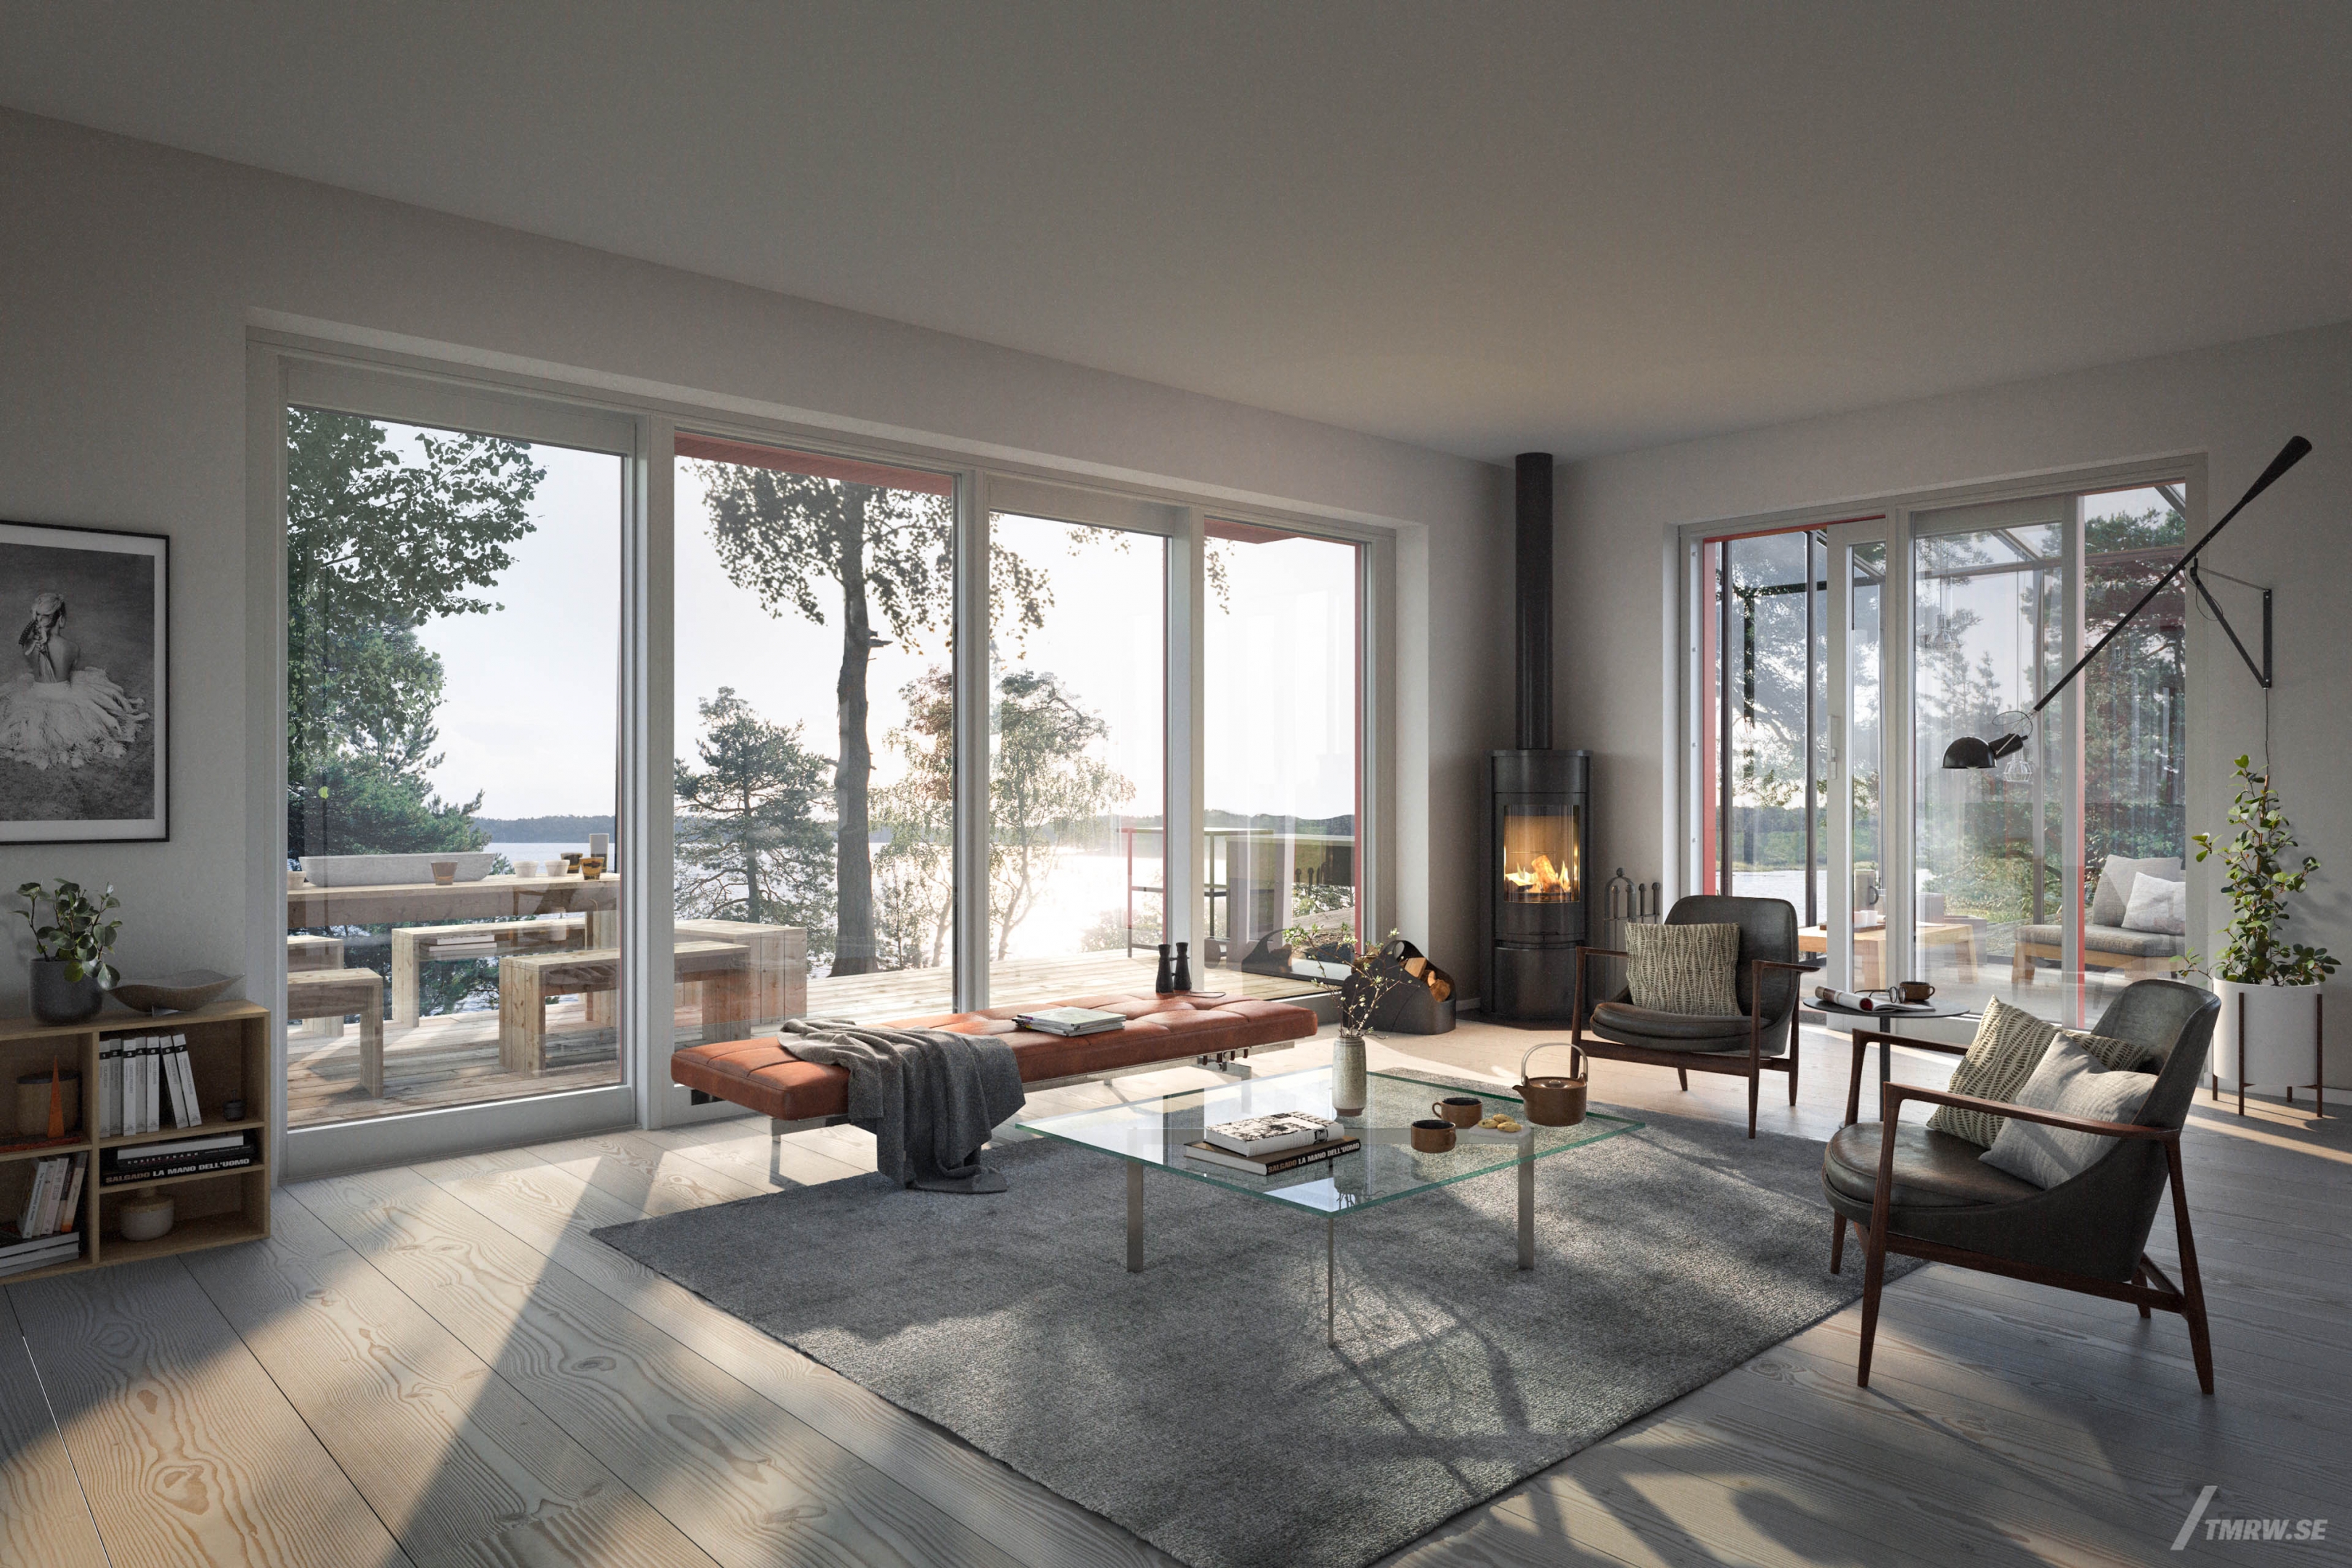 Architectural visualization of Glasberga for Arkitektbruket, interior of living room in day light, view over lake